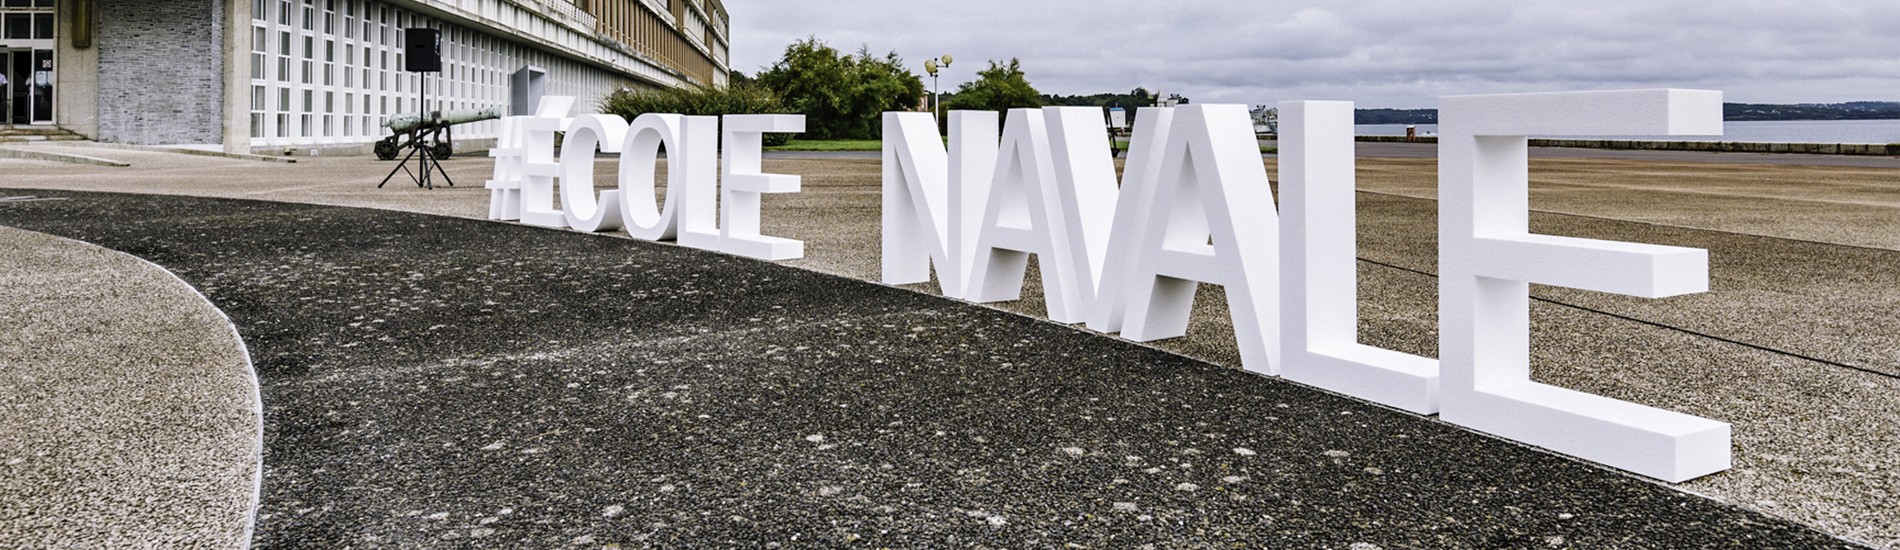 #ÉCOLE NAVALE, LETTRES EN POLYSTYRENE BLANC BRUT H 100 cm L 950 cm EP 25cm , Ecole Navale de Brest